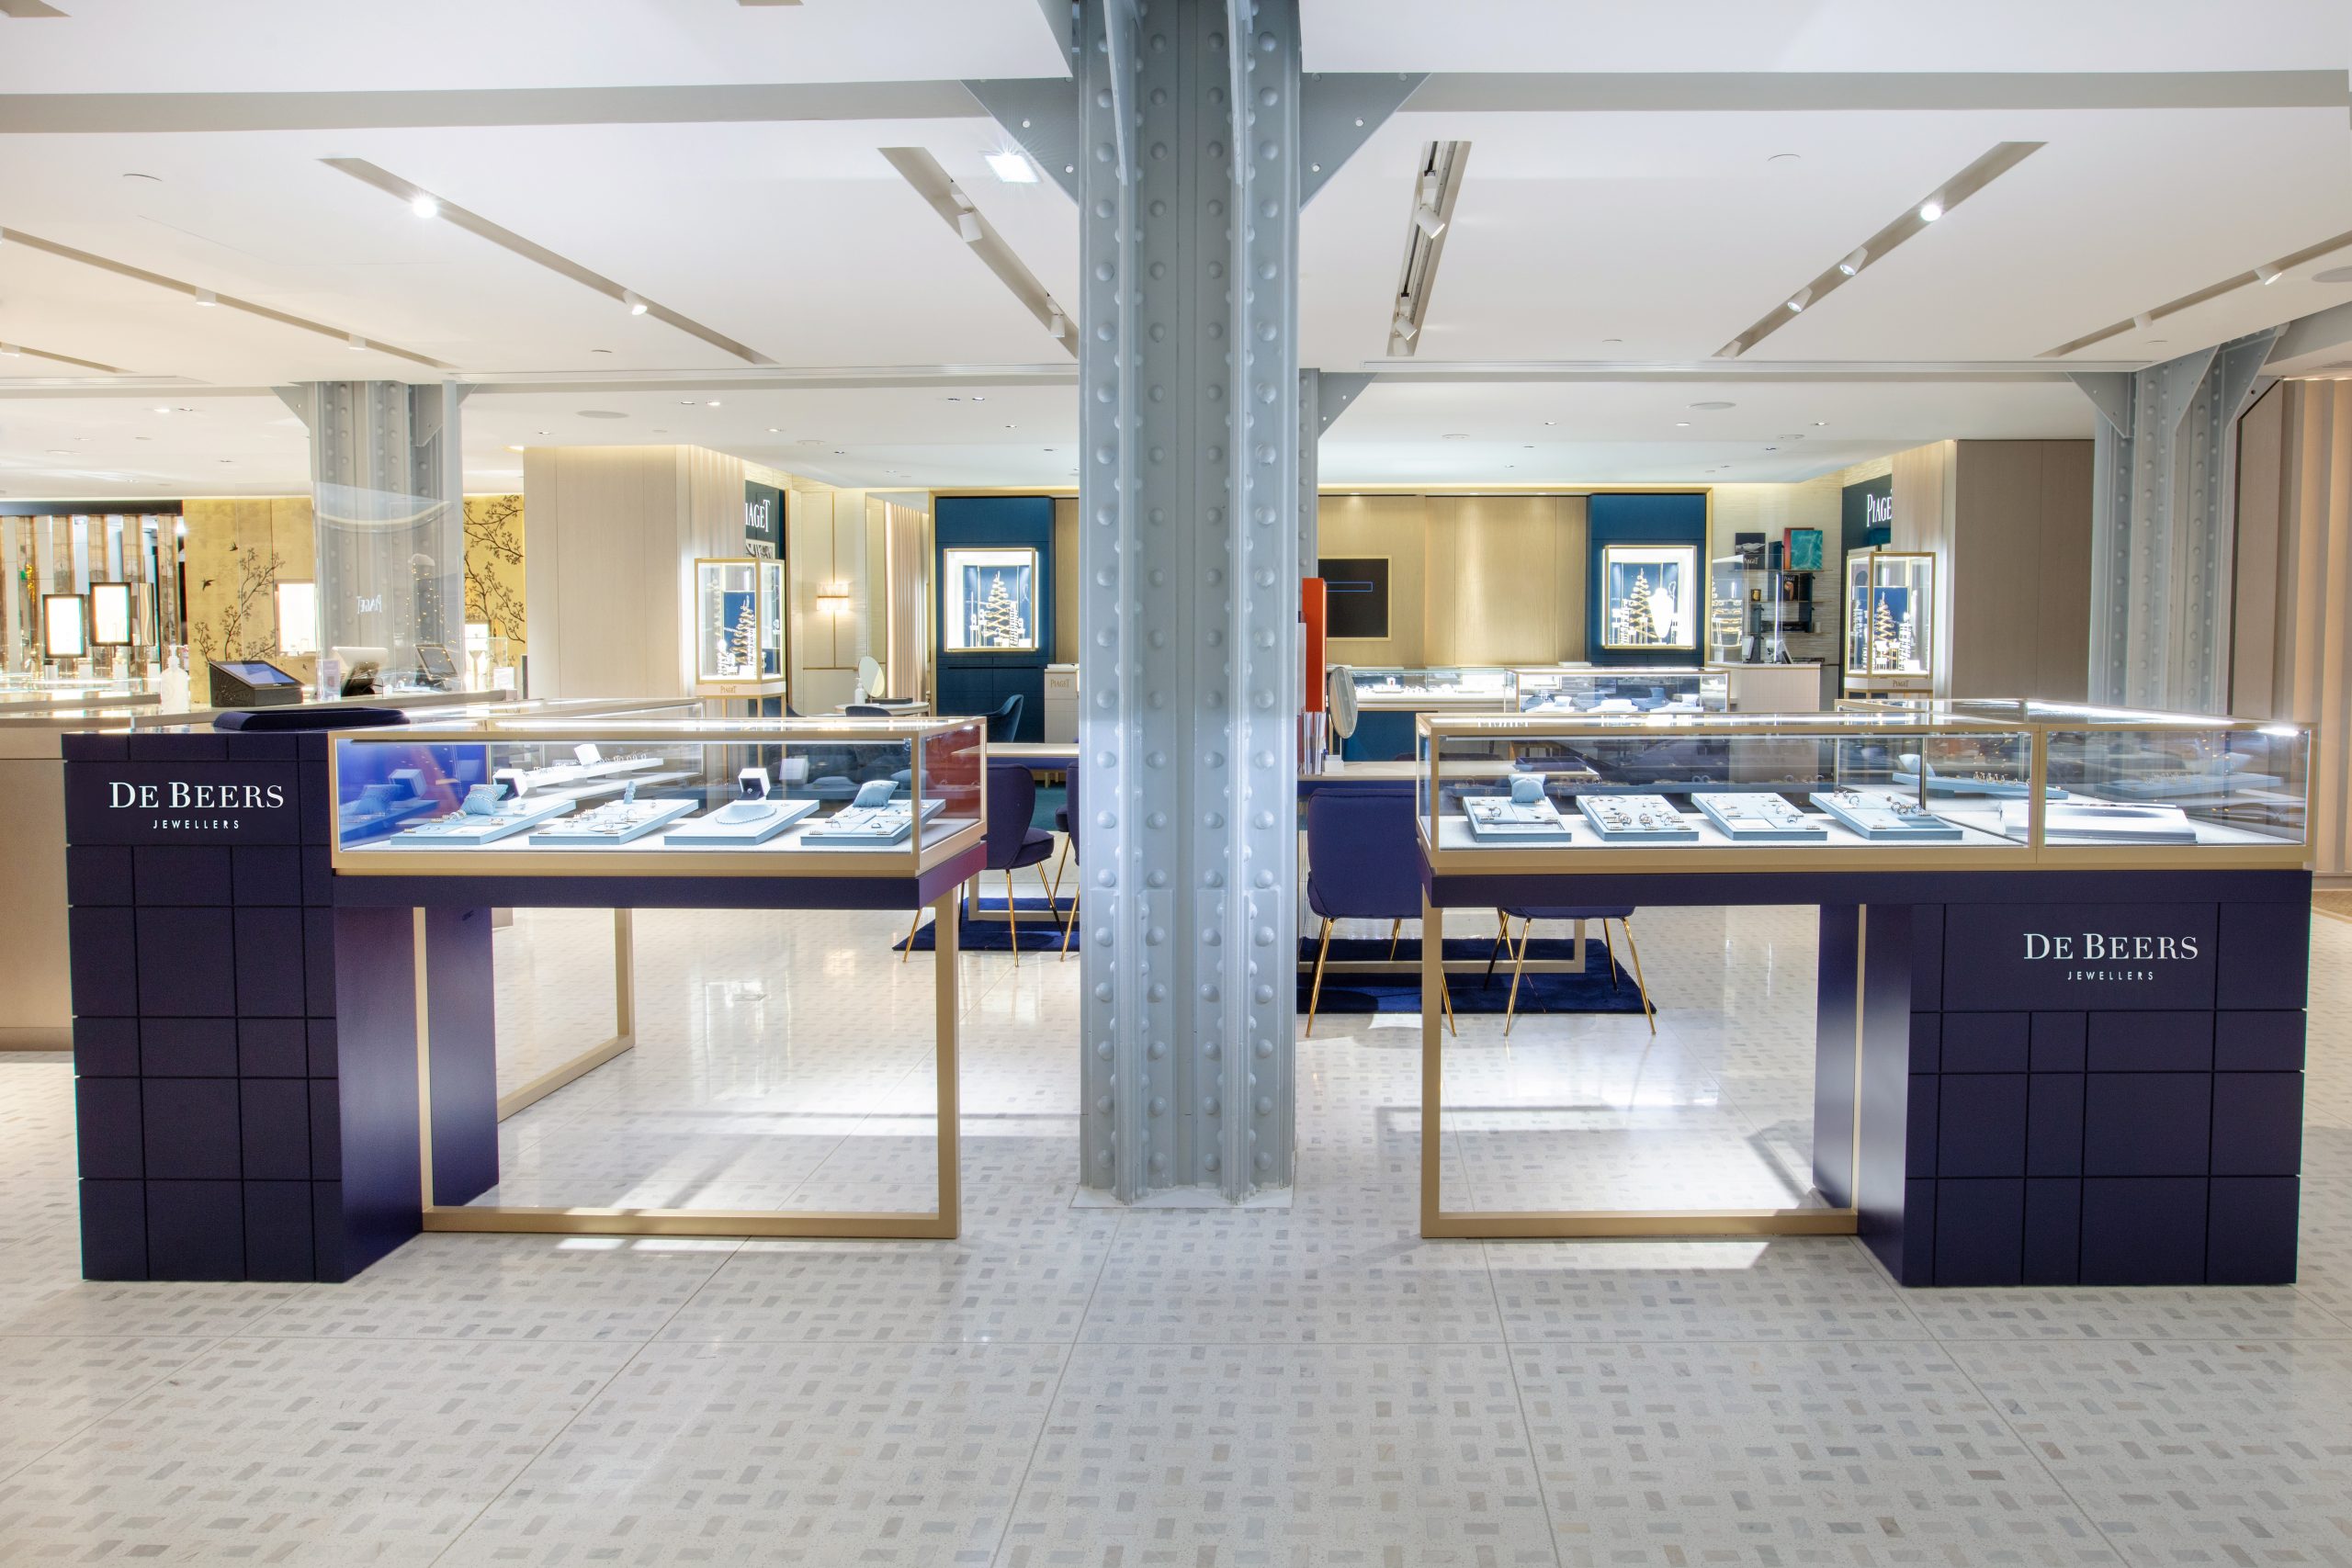 Corner réussi pour De Beers Jewellers à La Samaritaine – Un concept inédit de l’Agence Messieurs et BLR Création